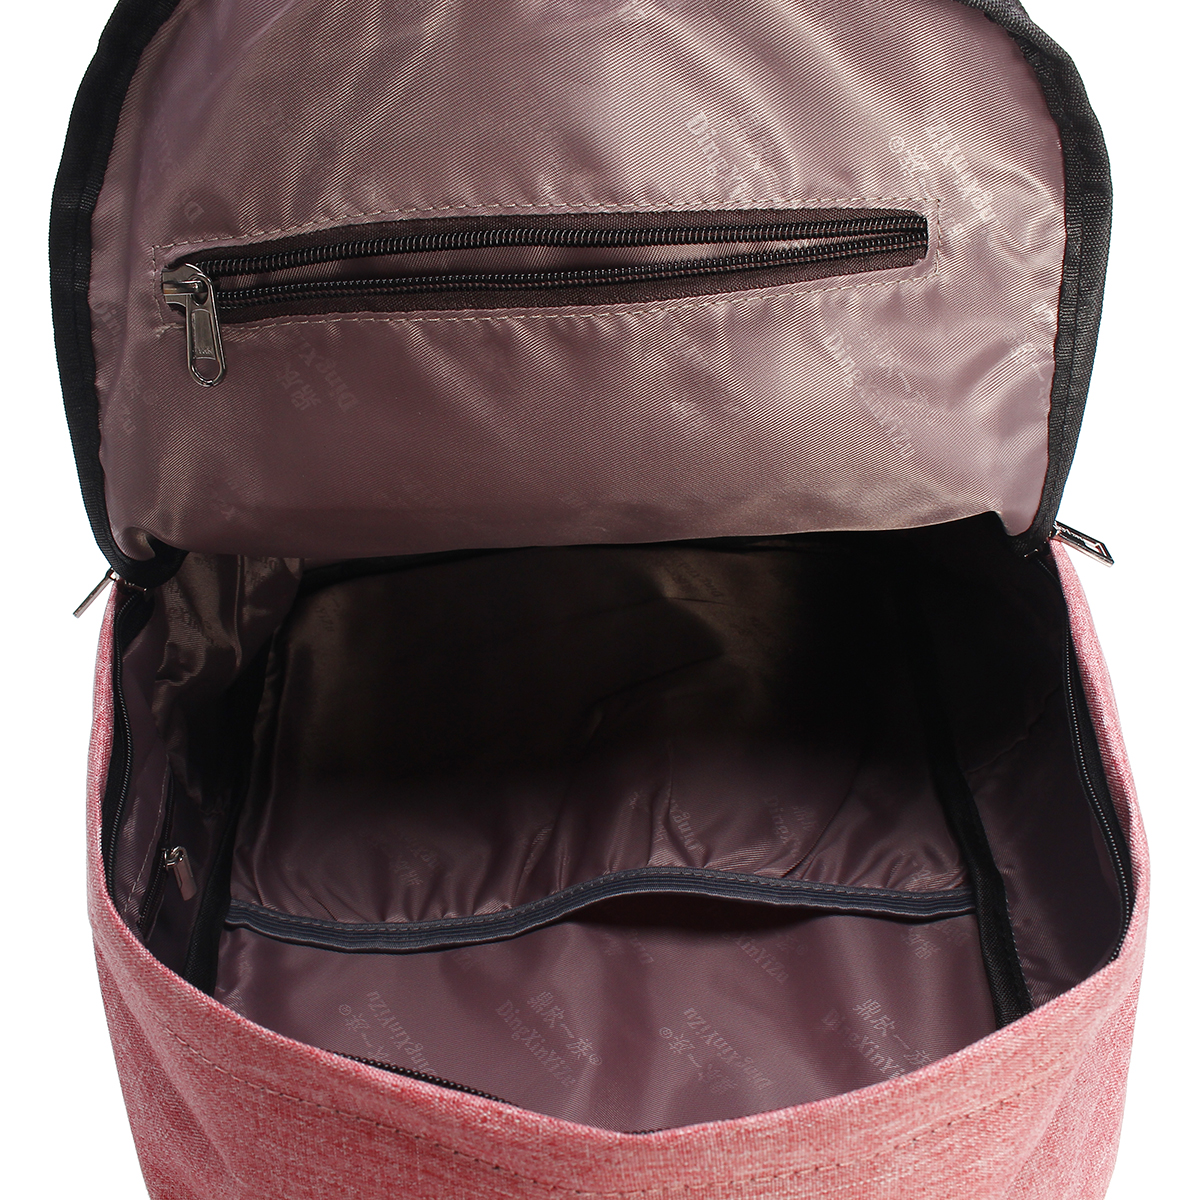 IPReetrade-Men-Women-USB-Charging-Backpack-Laptop-Bag-Travel-School-Book-Rucksack-1165838-7